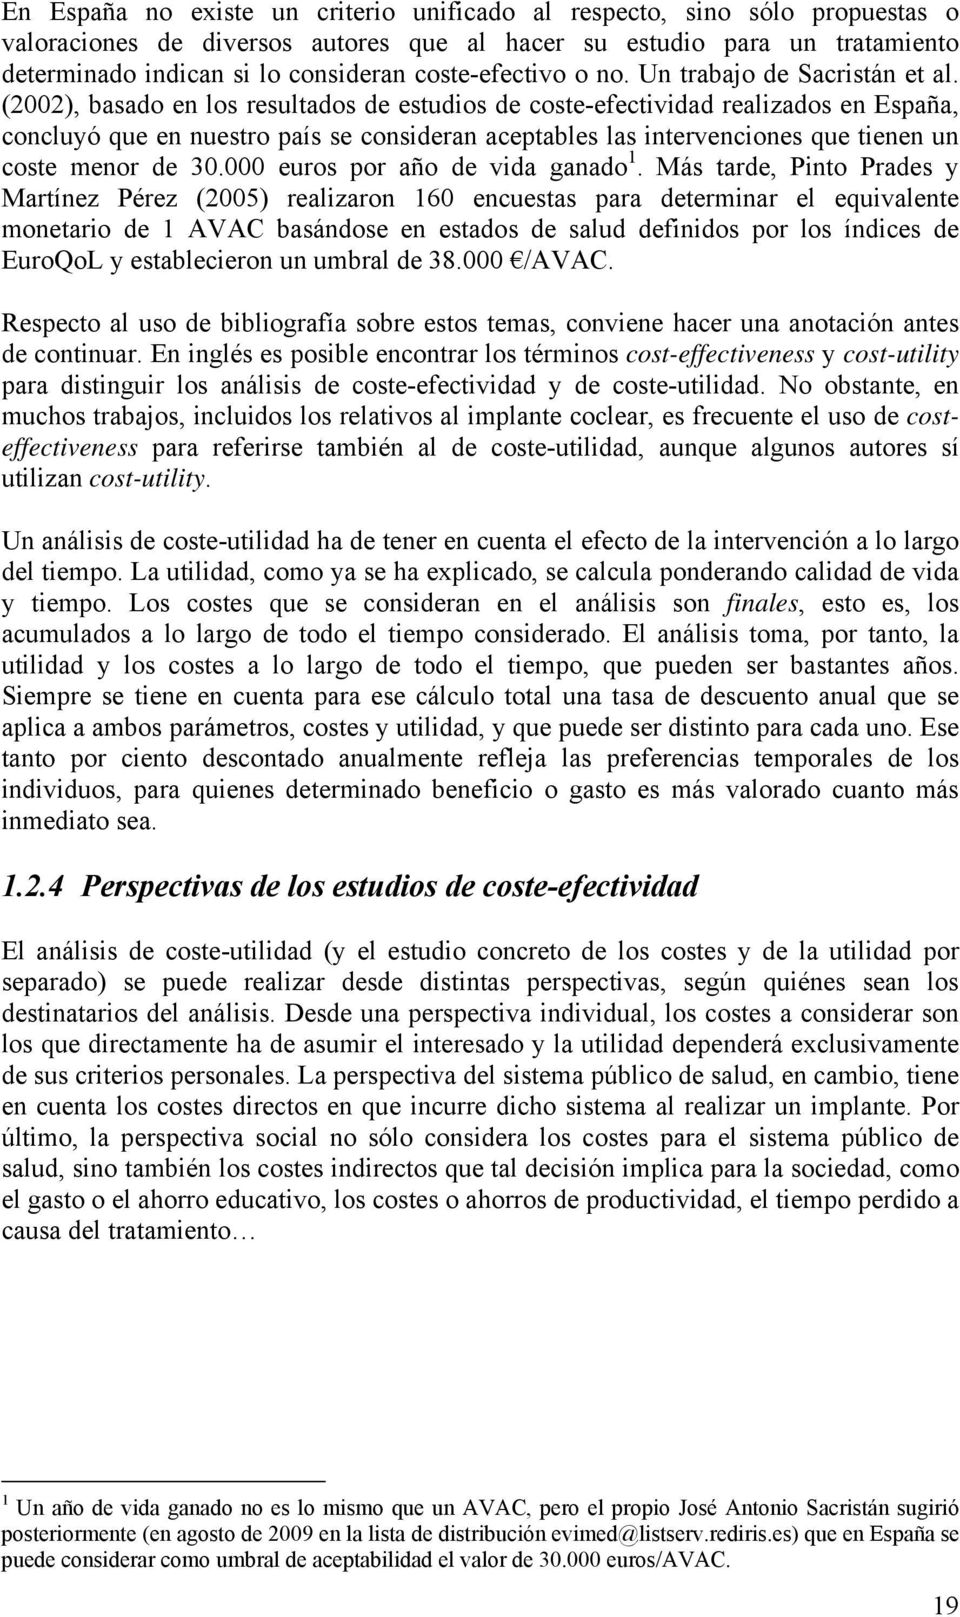 (2002), basado en los resultados de estudios de coste-efectividad realizados en España, concluyó que en nuestro país se consideran aceptables las intervenciones que tienen un coste menor de 30.